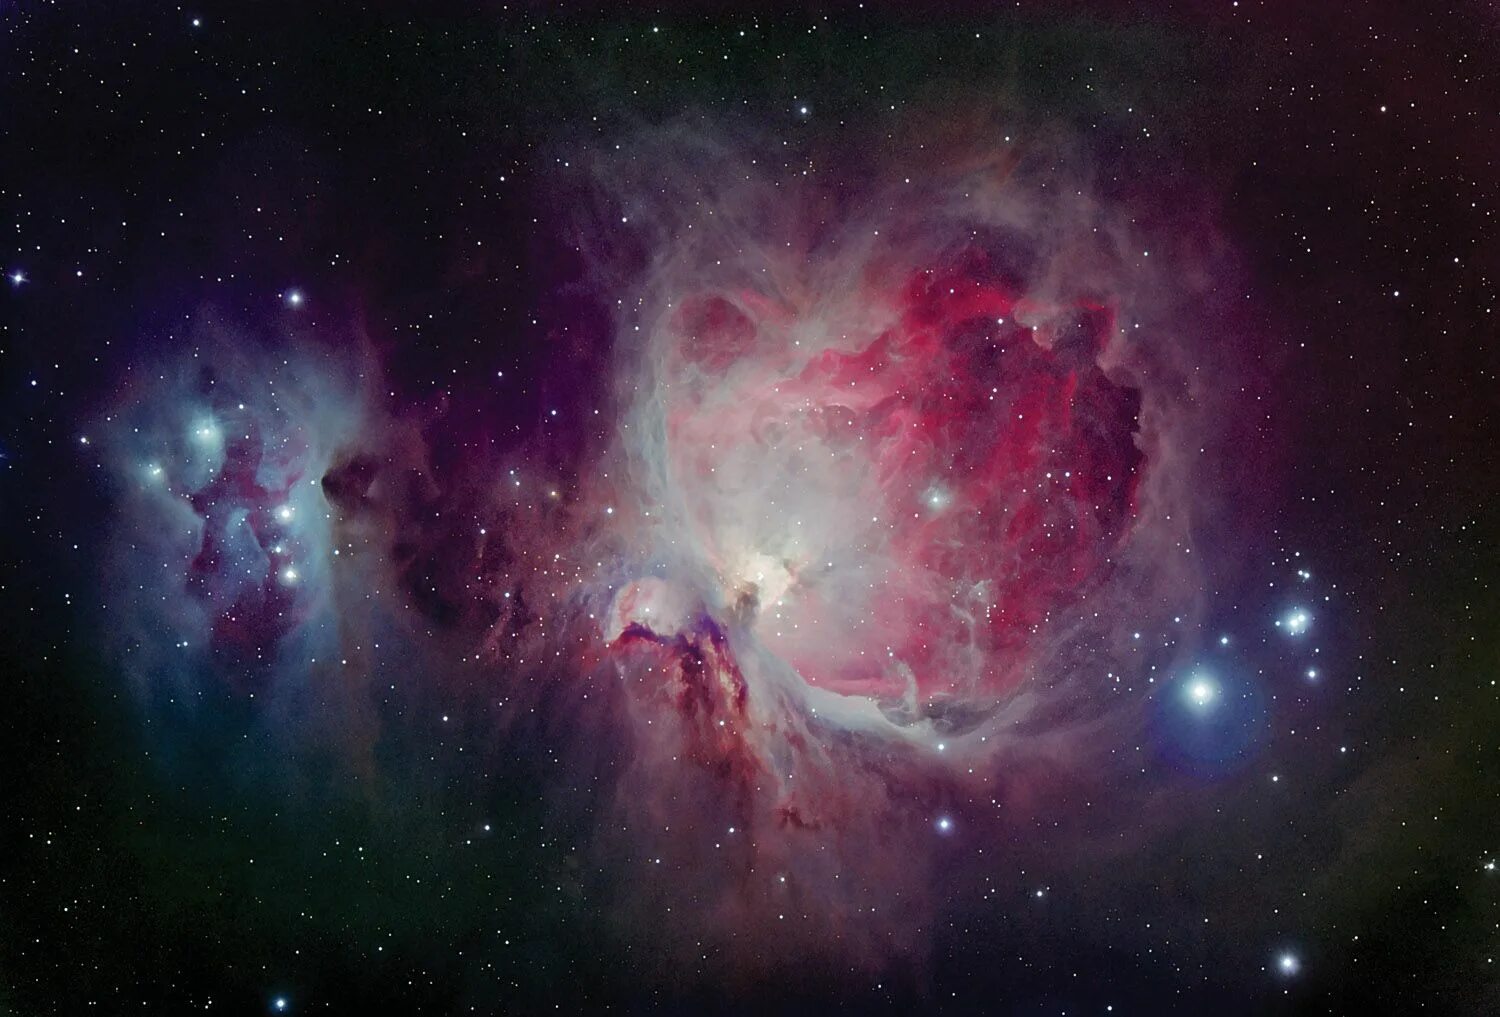 Allow space. Туманность Ориона Мессье 42. Большая туманность Ориона m42. Туманность де Мерана – m43. Туманность в созвездии Ориона.